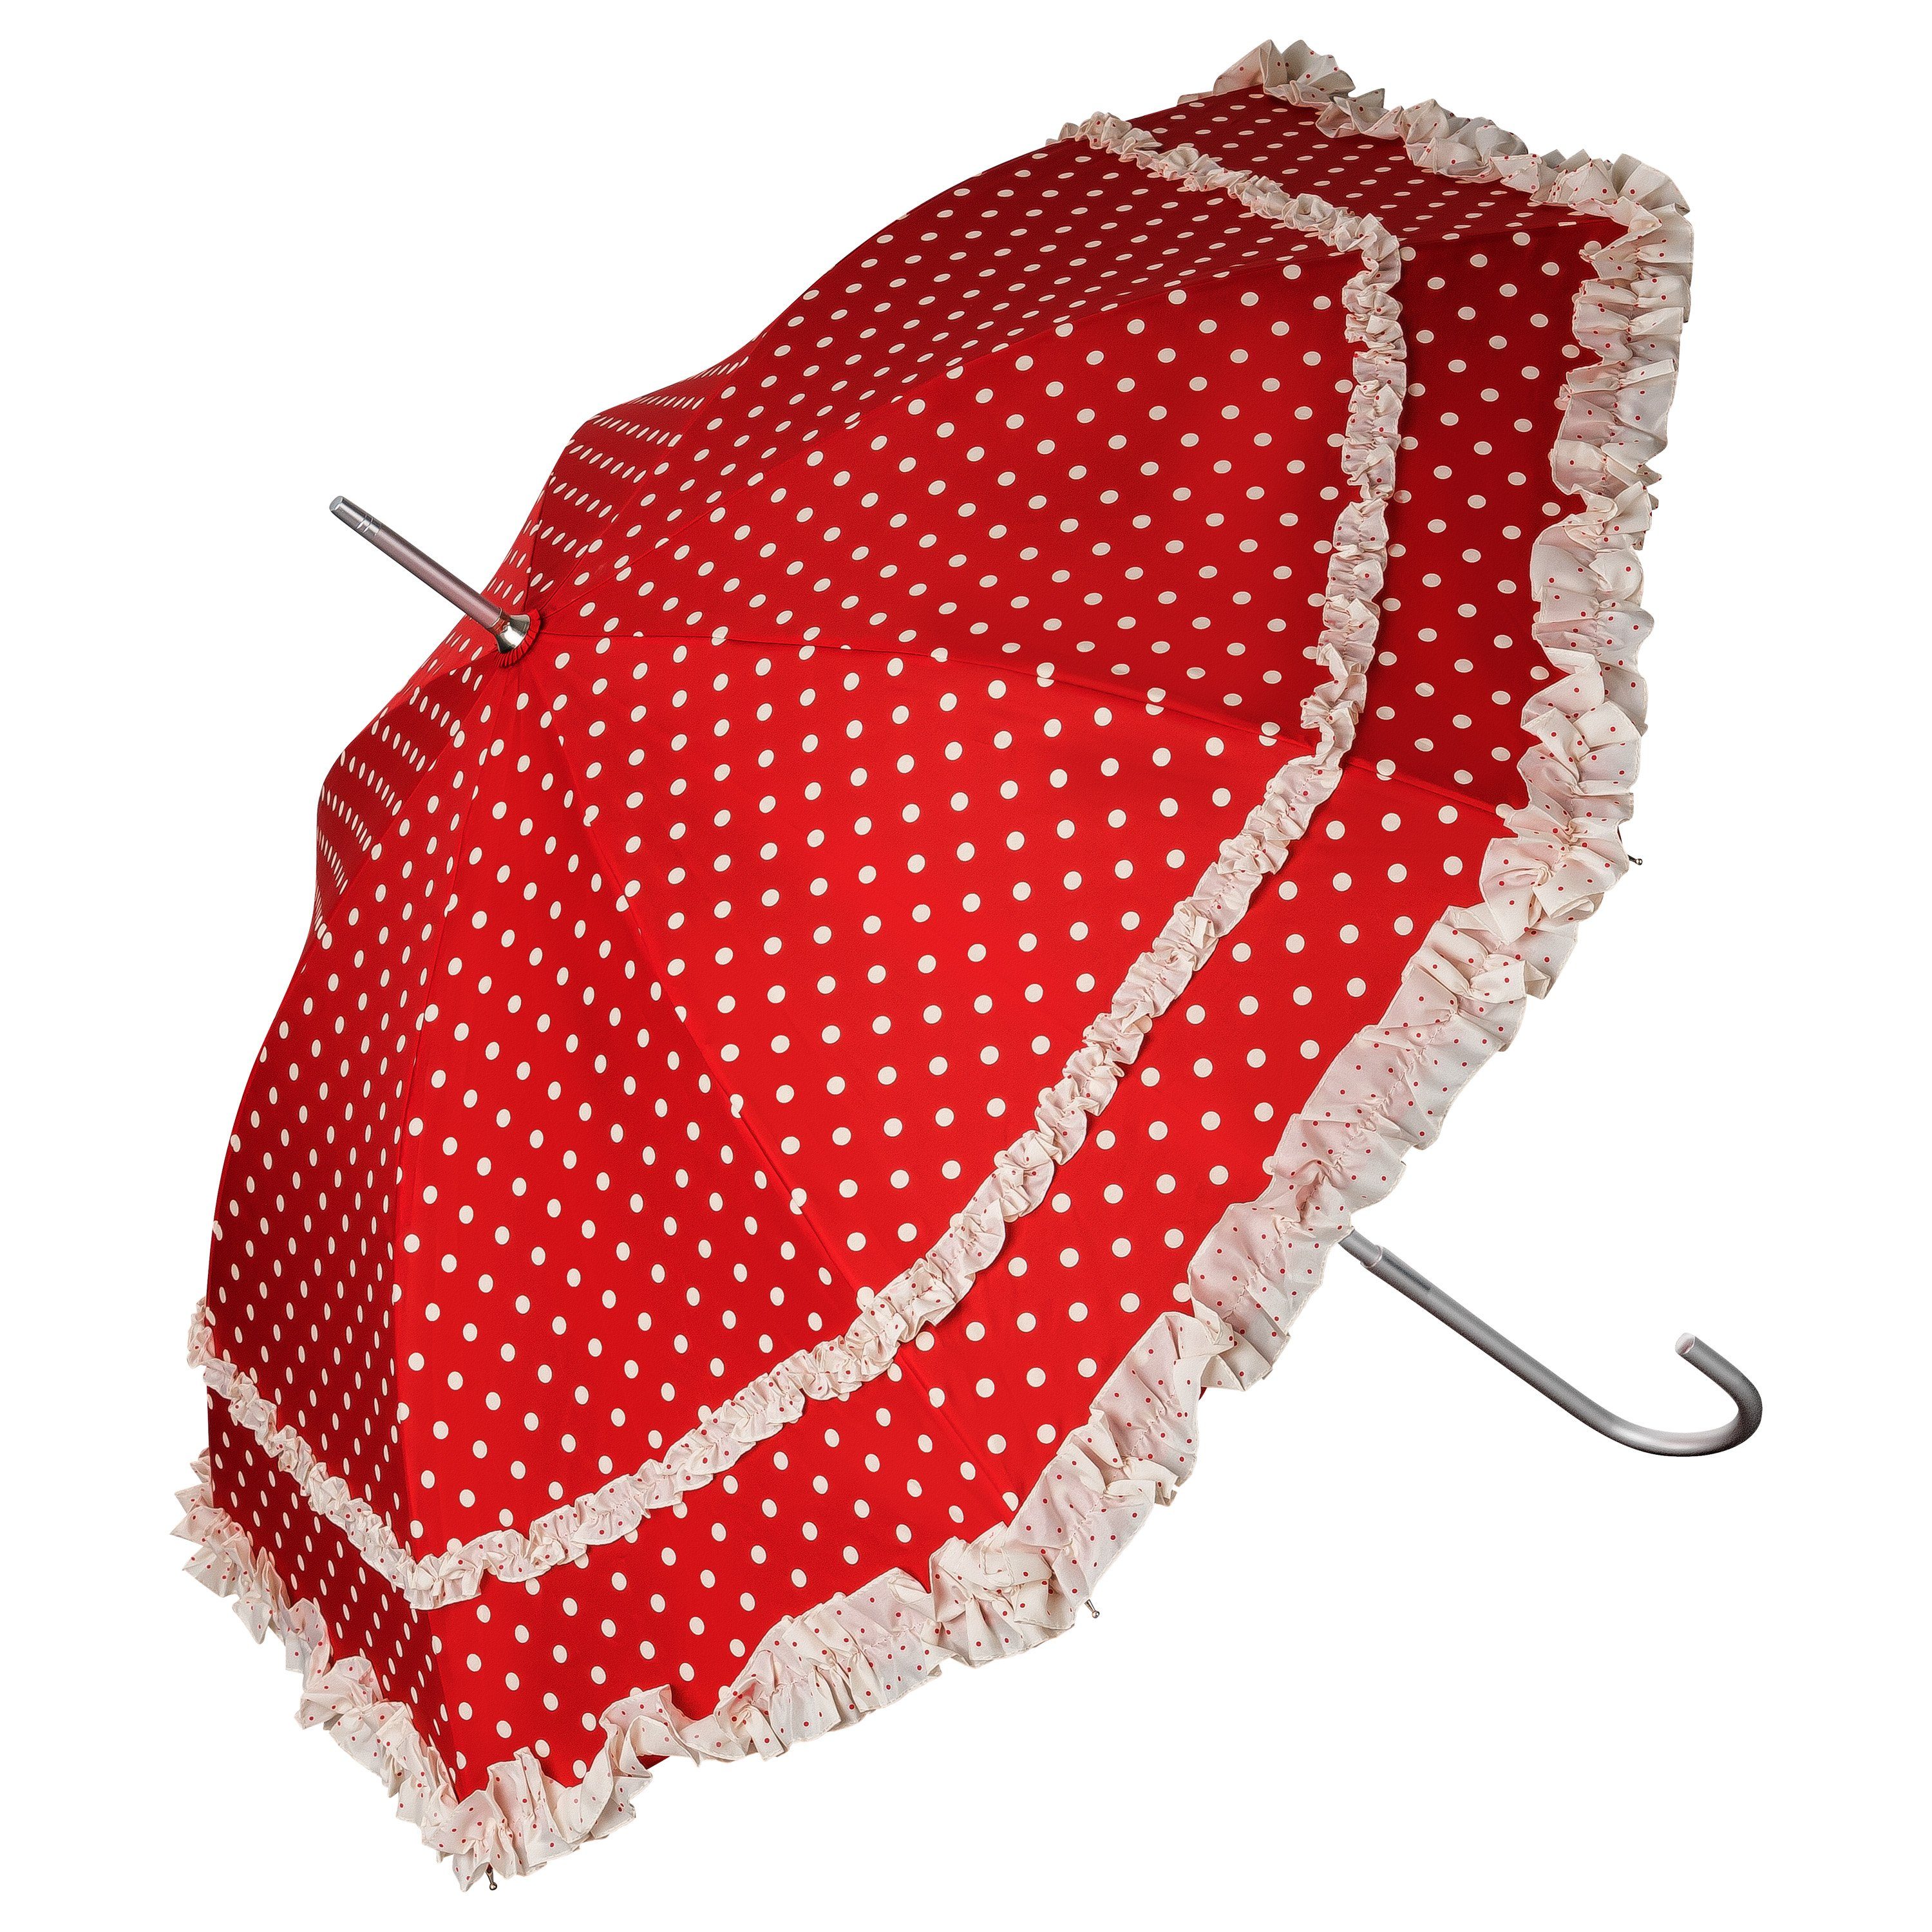 von Lilienfeld Stockregenschirm Regenschirm Sonnenschirm Hochzeitsschirm Mary, zwei Rüschenkanten rot mit Punkten in creme